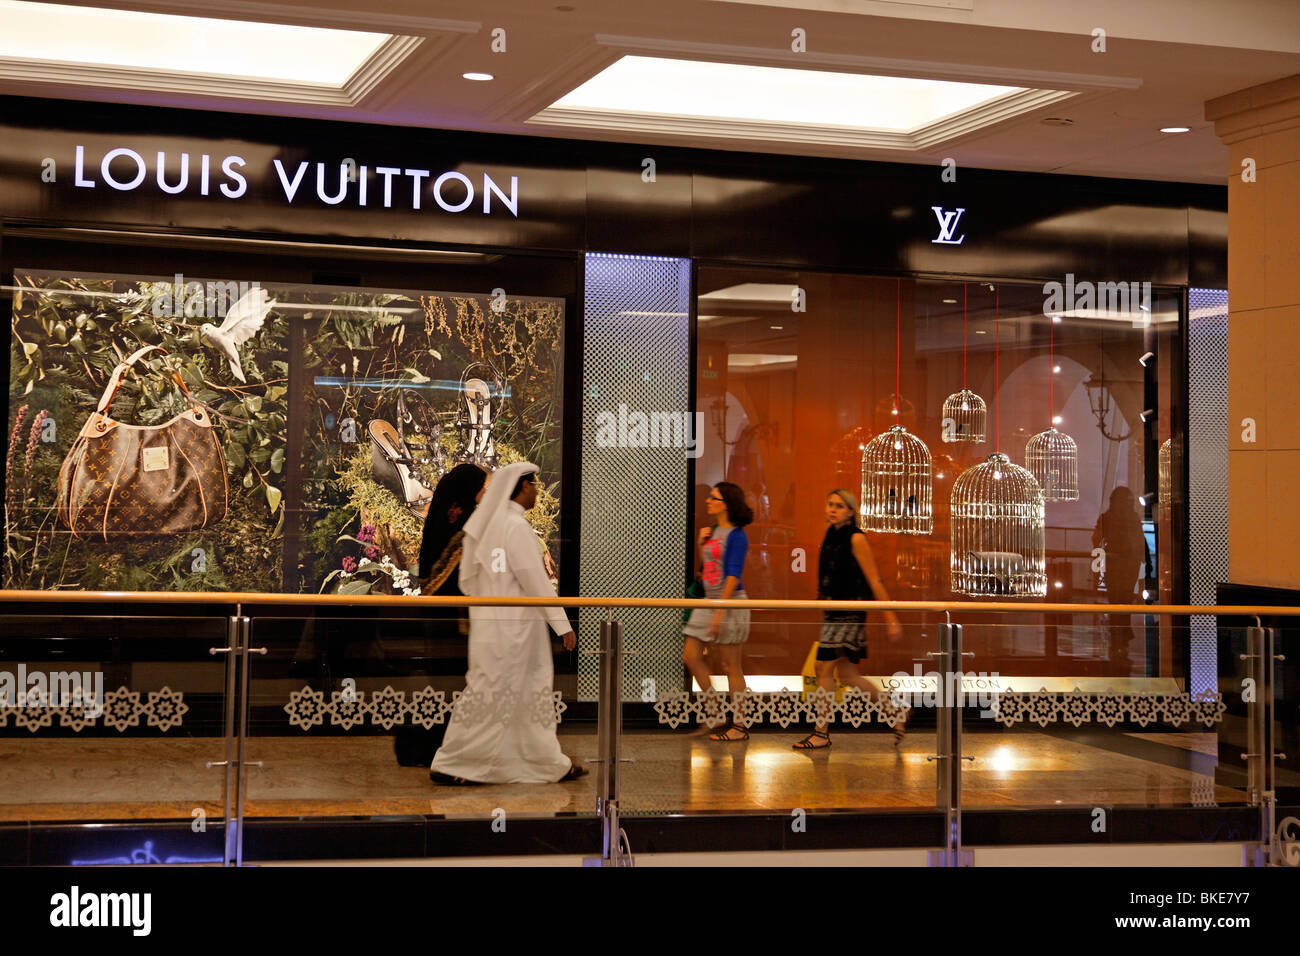 Louis Vuitton Ioi City Mall